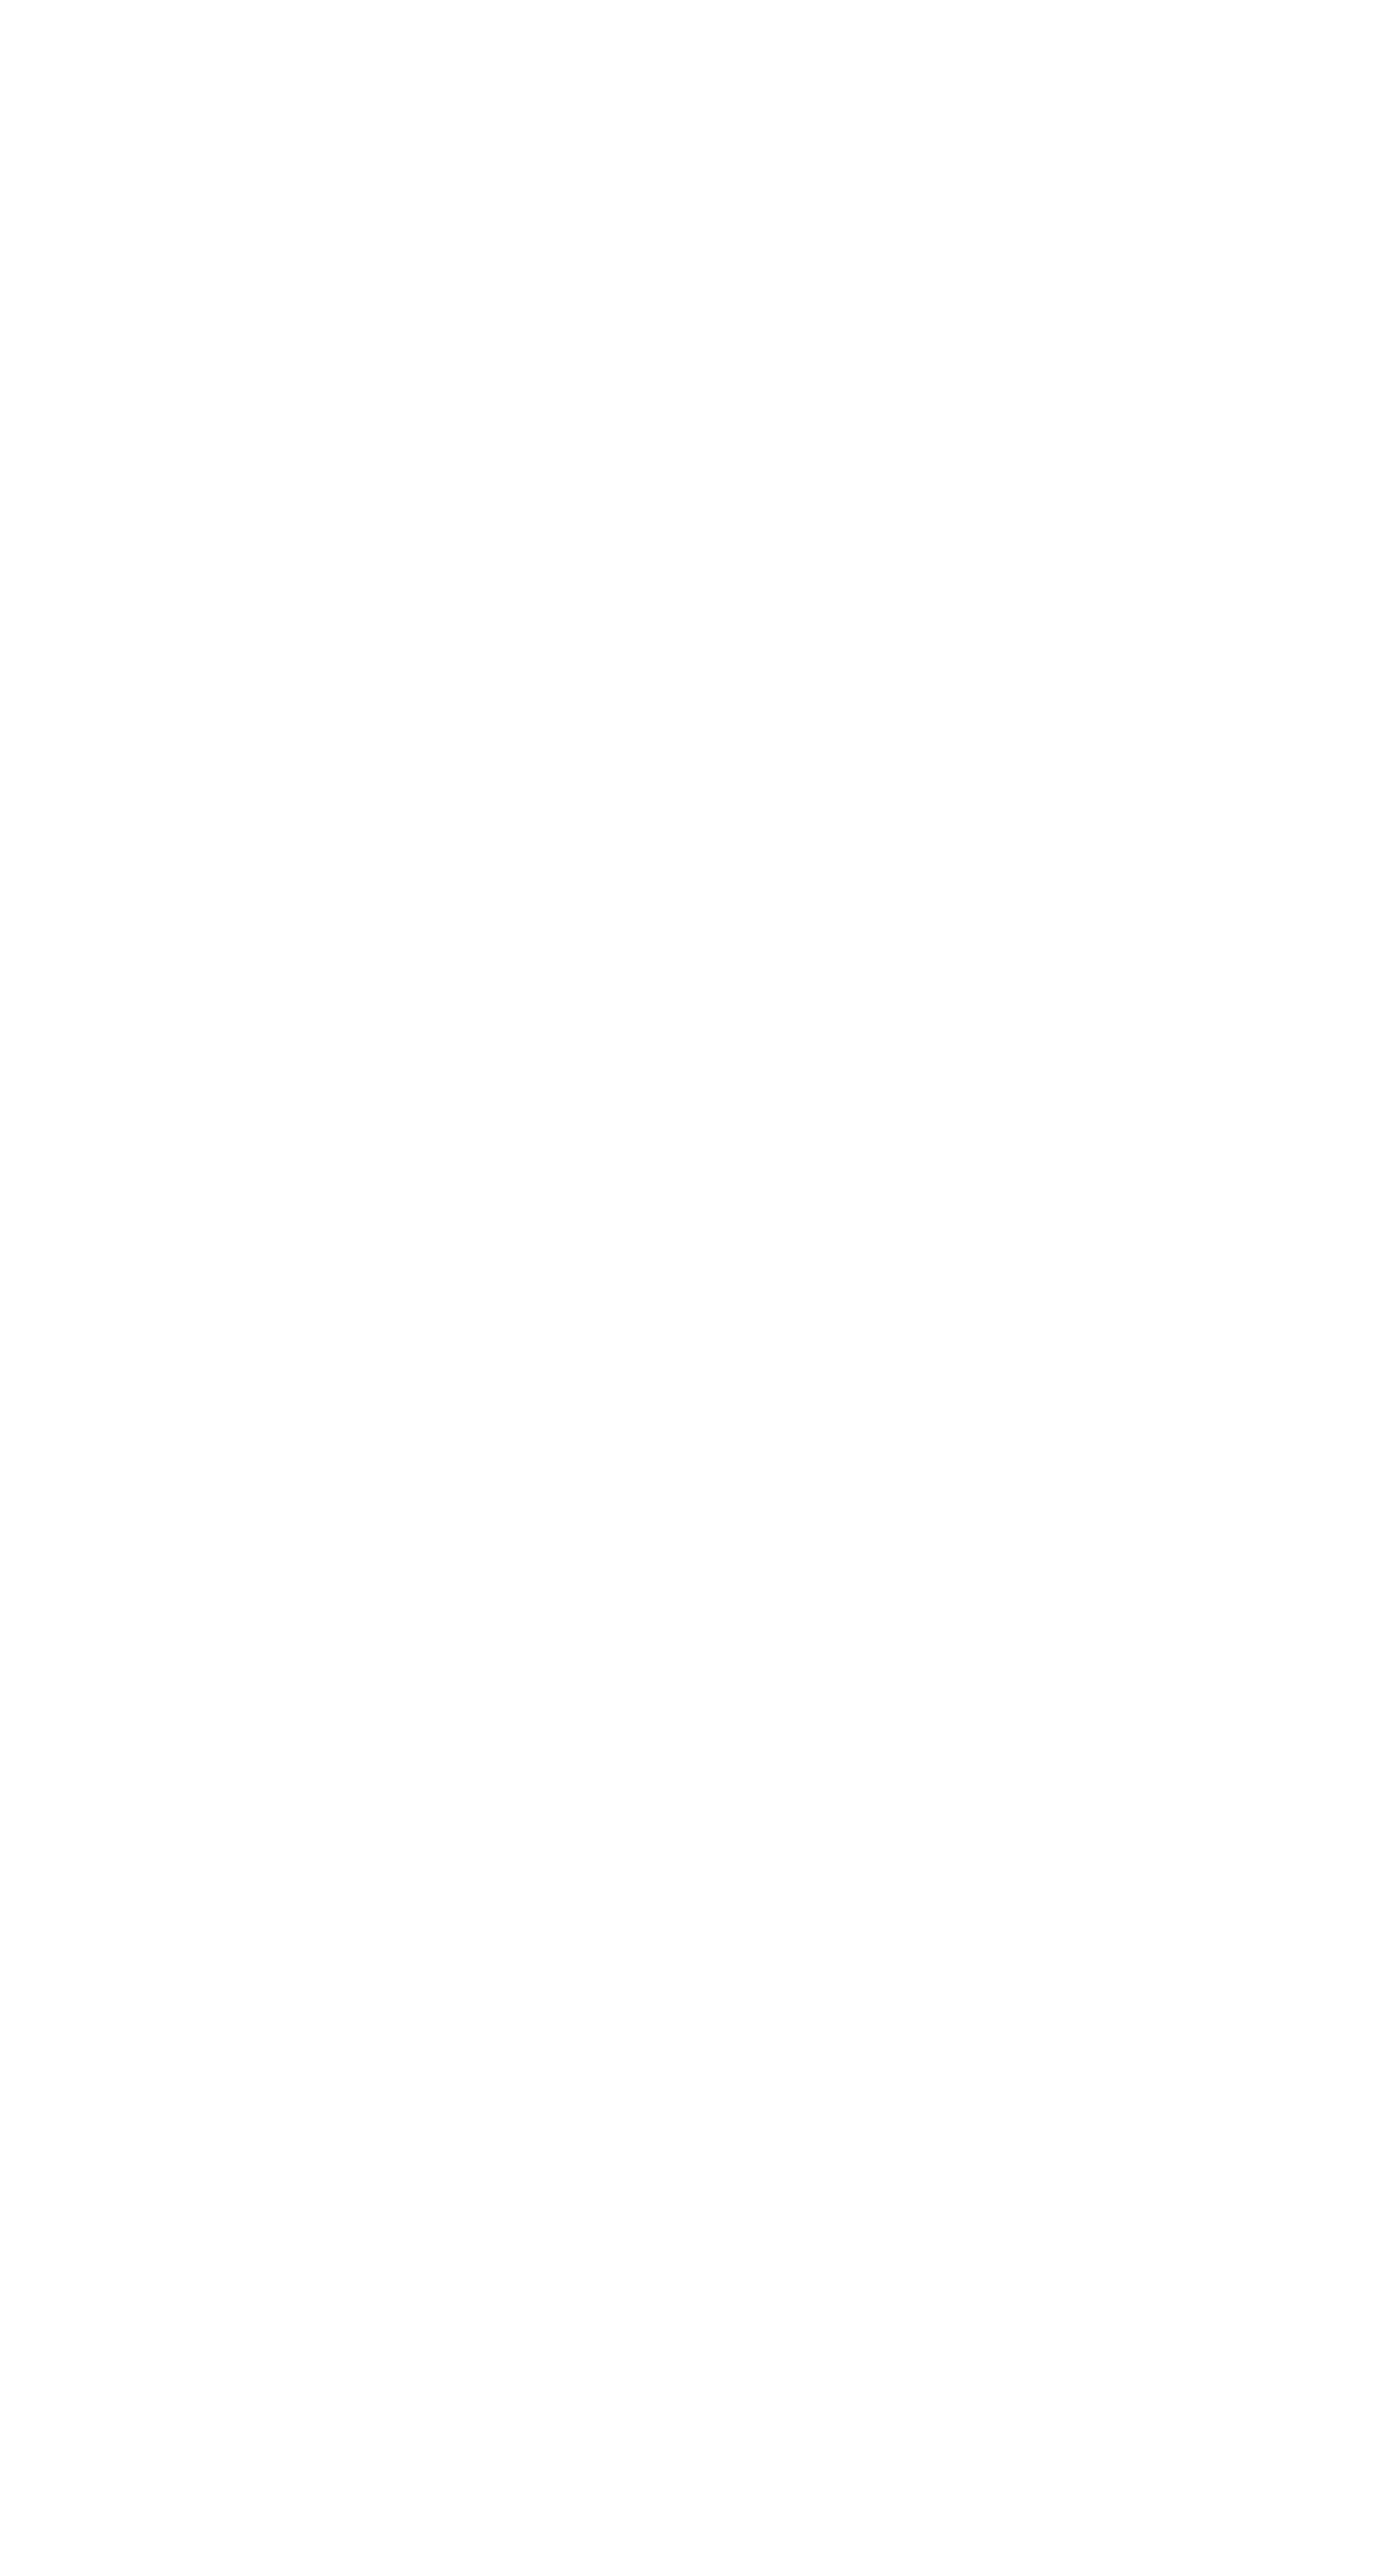 KakaoBank logo for dark backgrounds (transparent PNG)